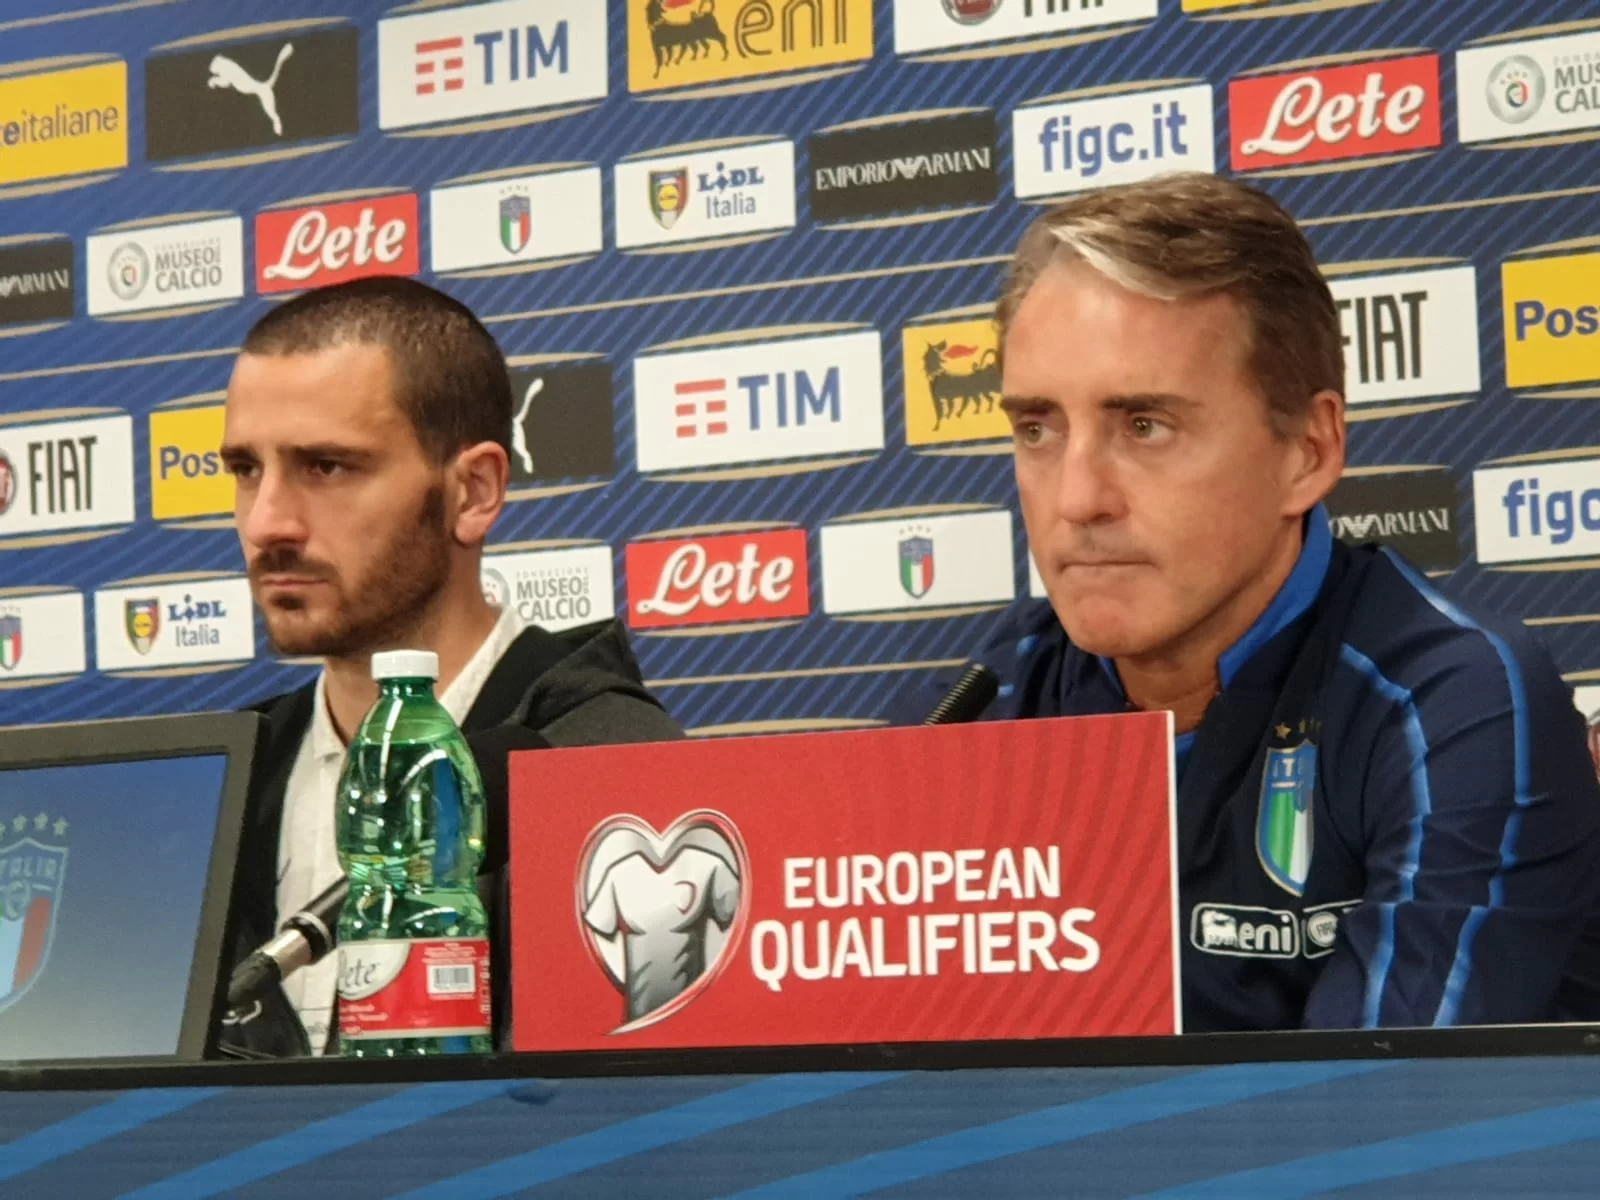 Mancini esulta: “Finalmente un campionato equilibrato”